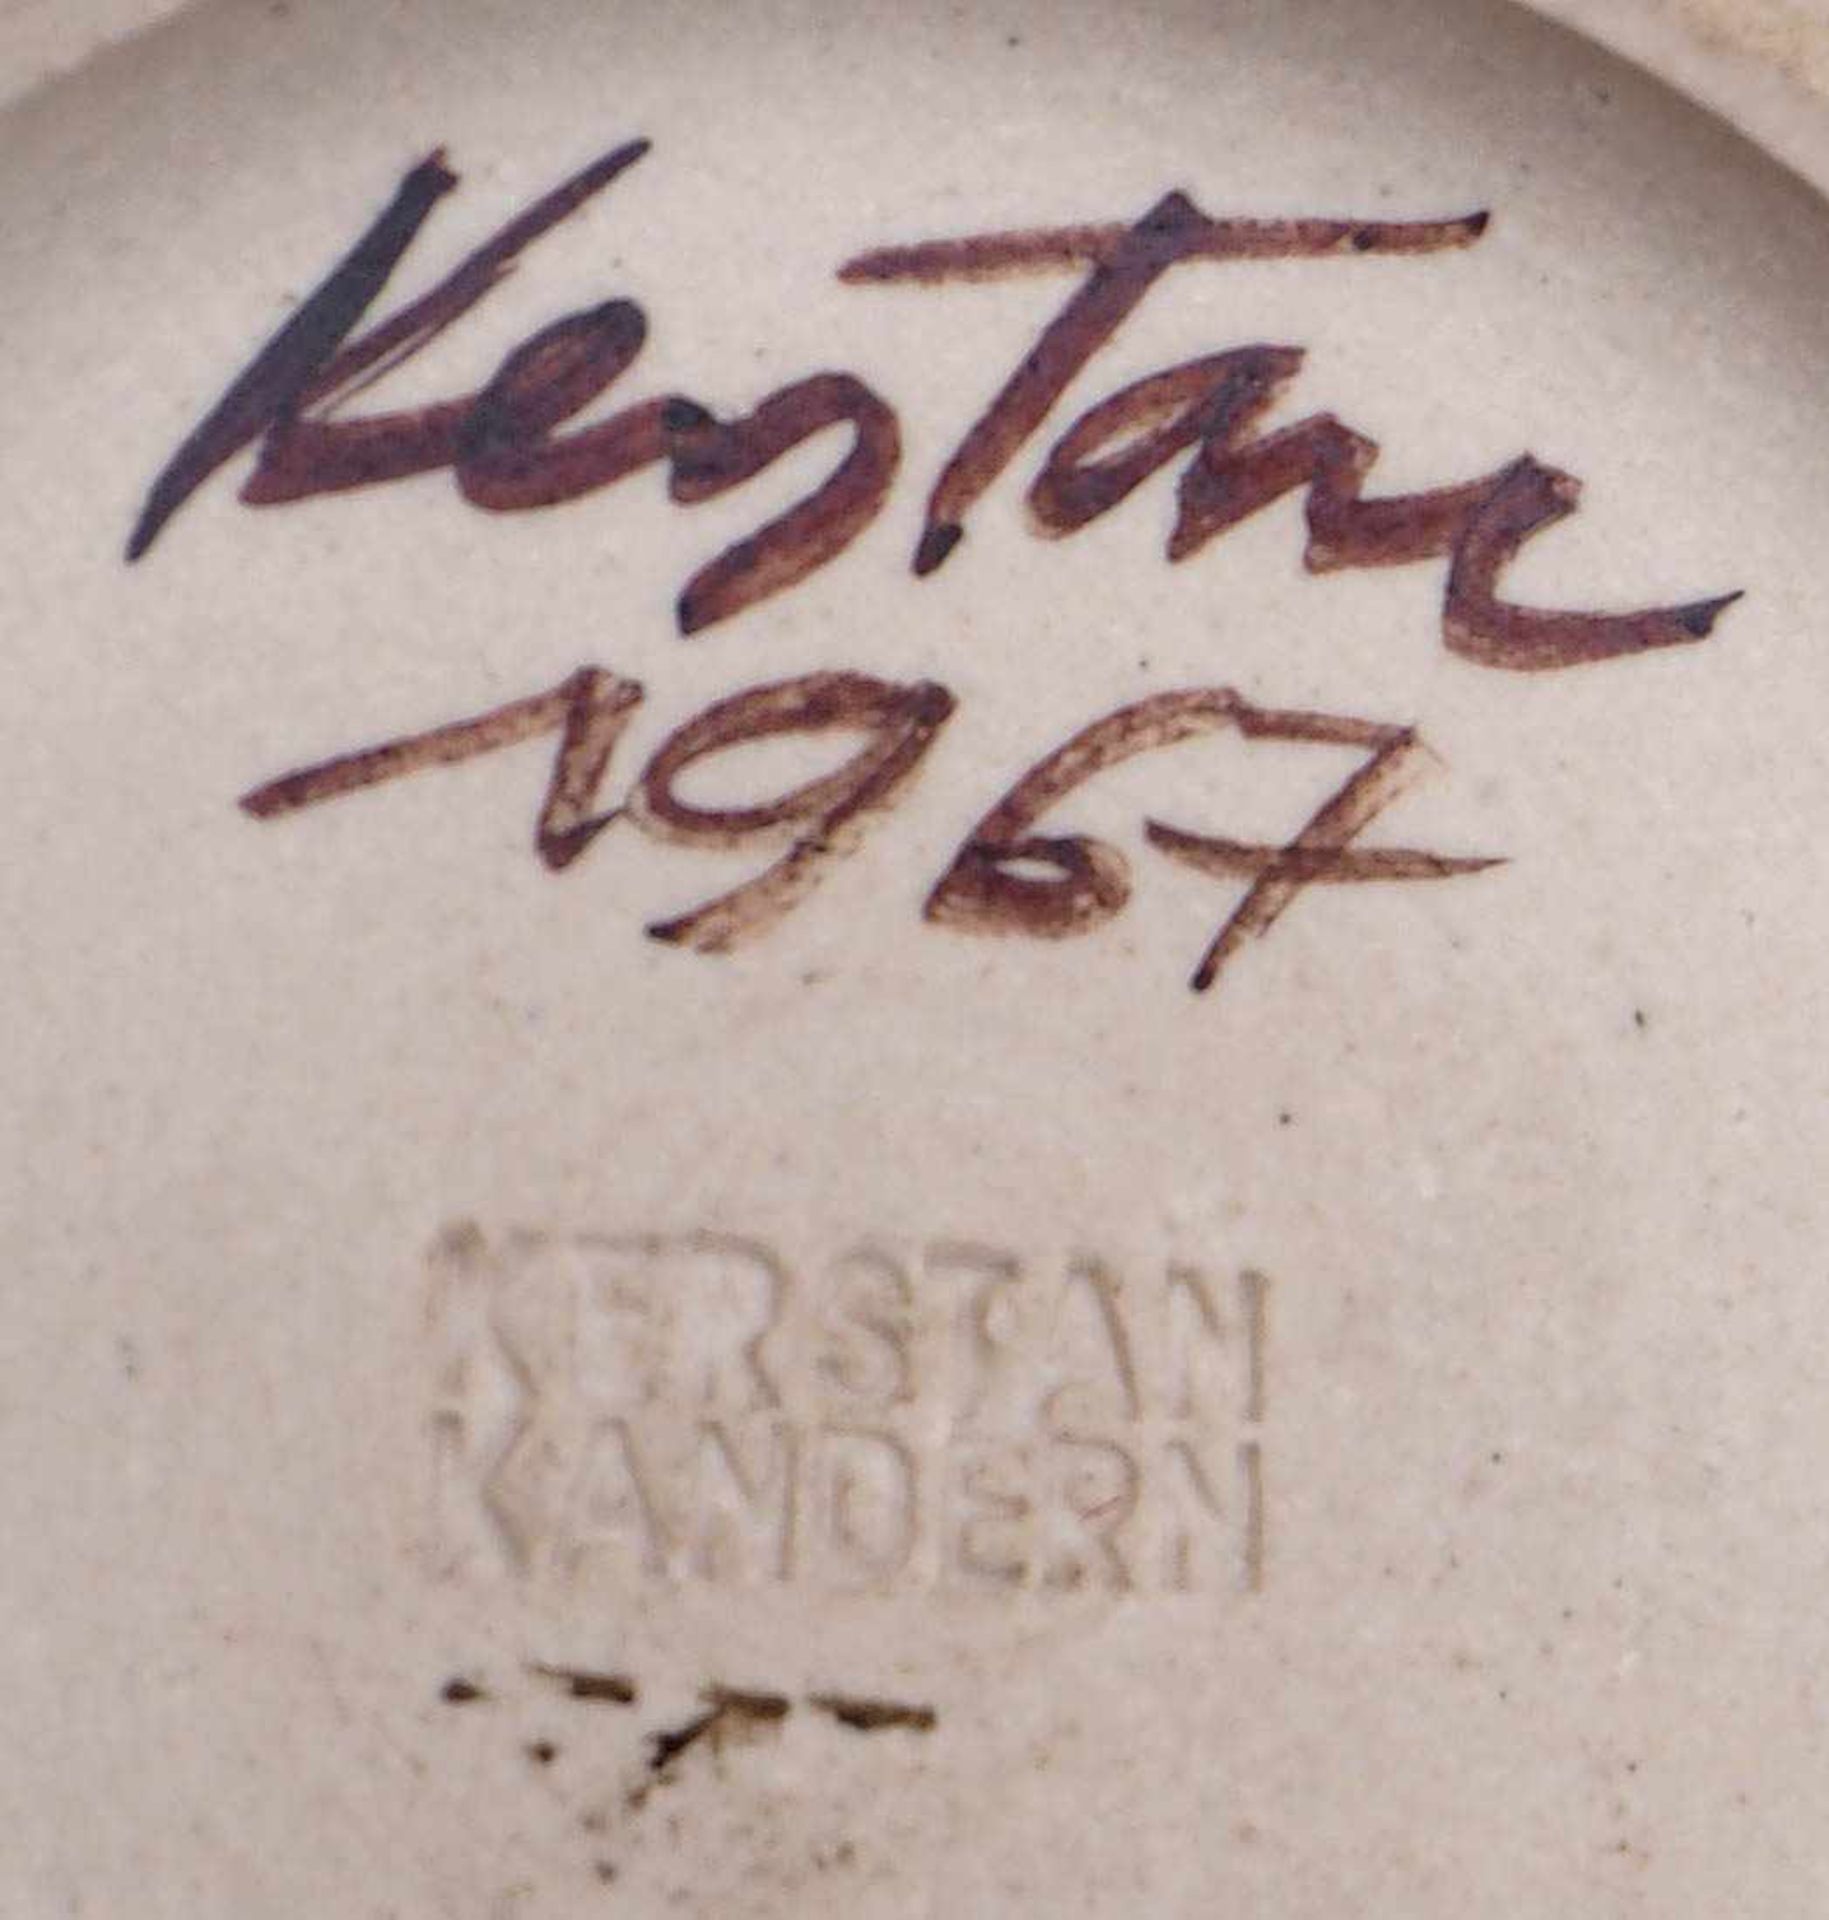 Kerstan, Horst, 1941 - 2005 Frühe Künstlervase. Kugeliger Korpus, weiße Eisglasur mit rotem Bogen - Bild 2 aus 2